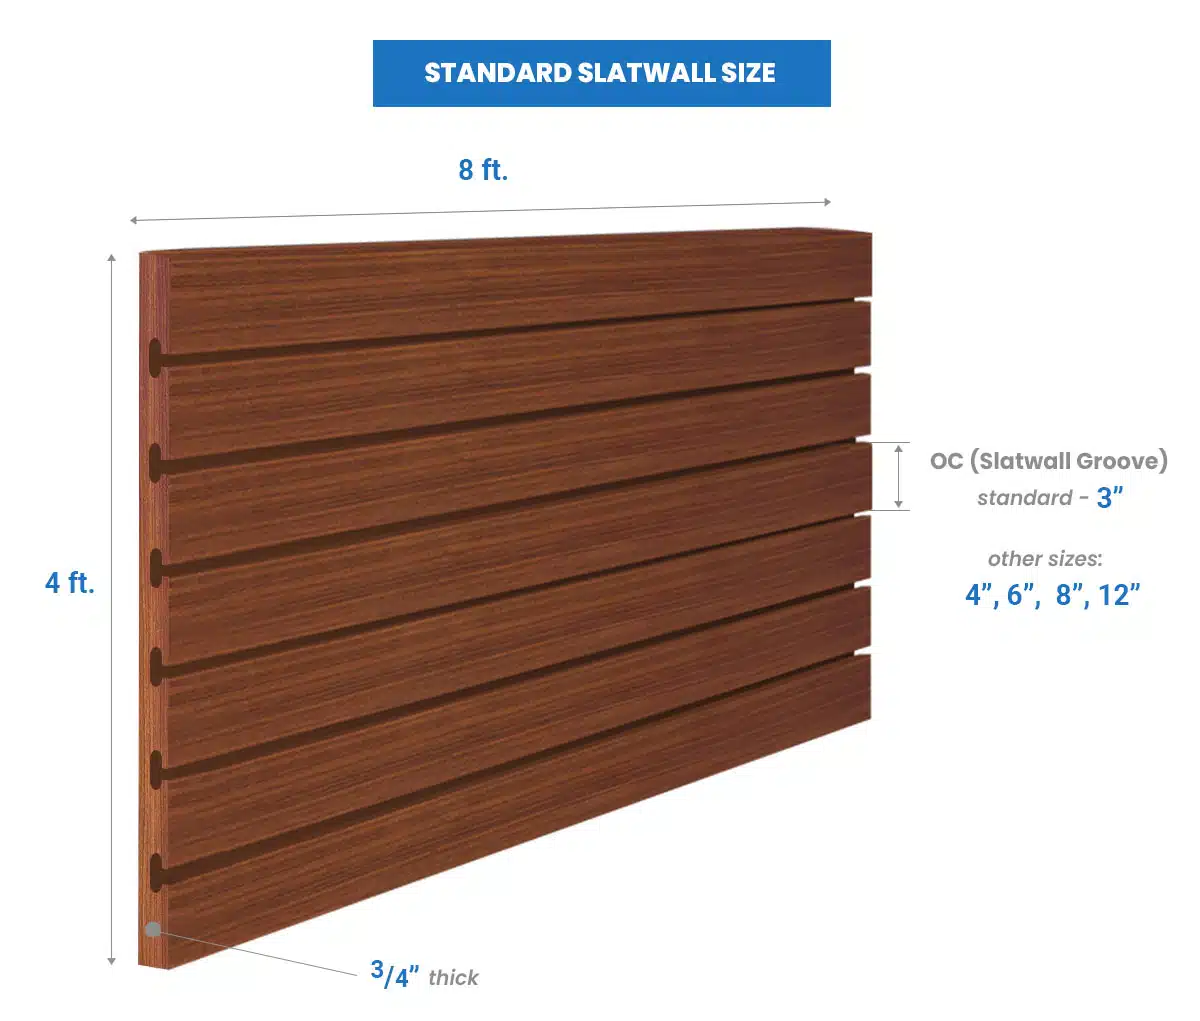 Standard slatwall size